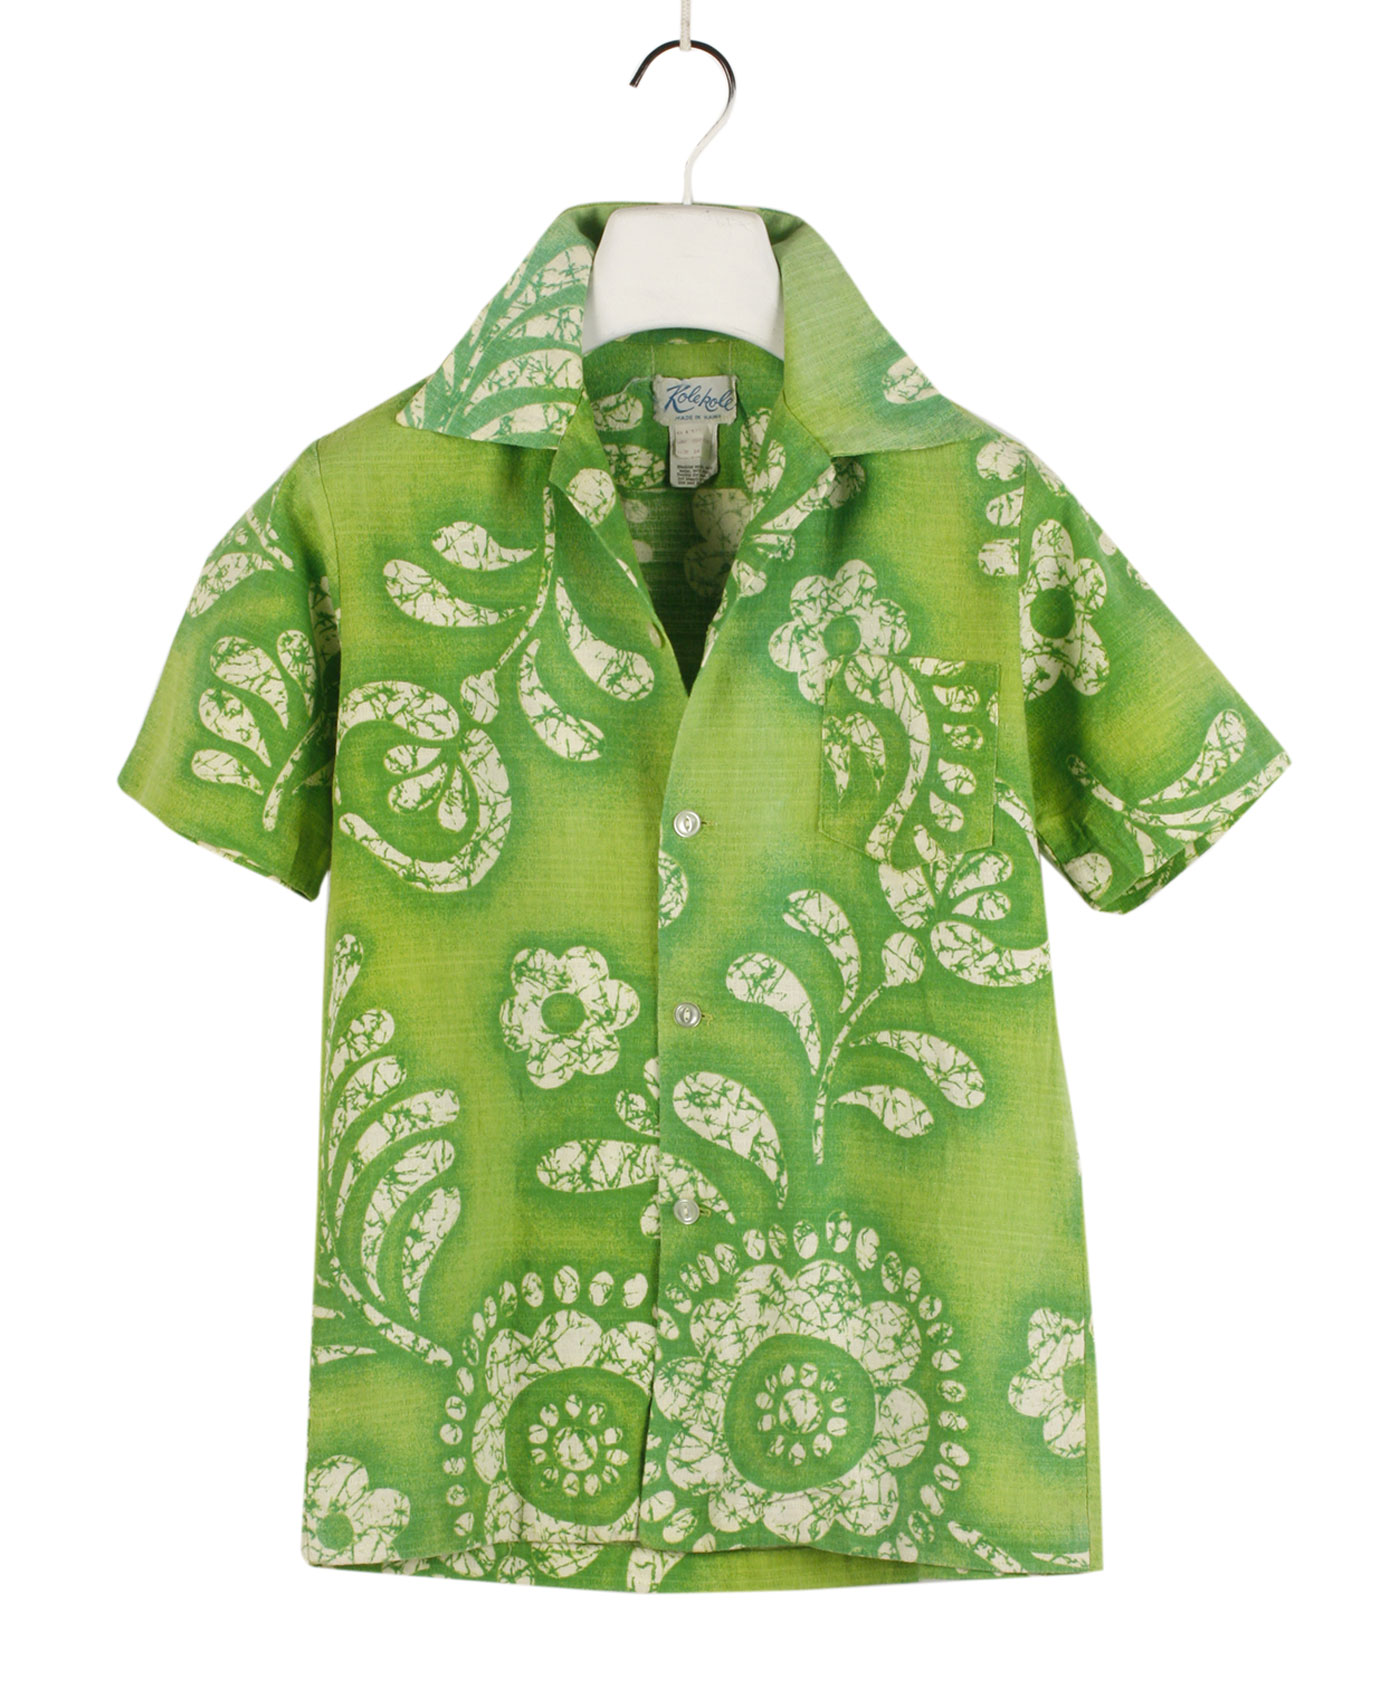 KOLE KOLE Hawaiian shirt '50s